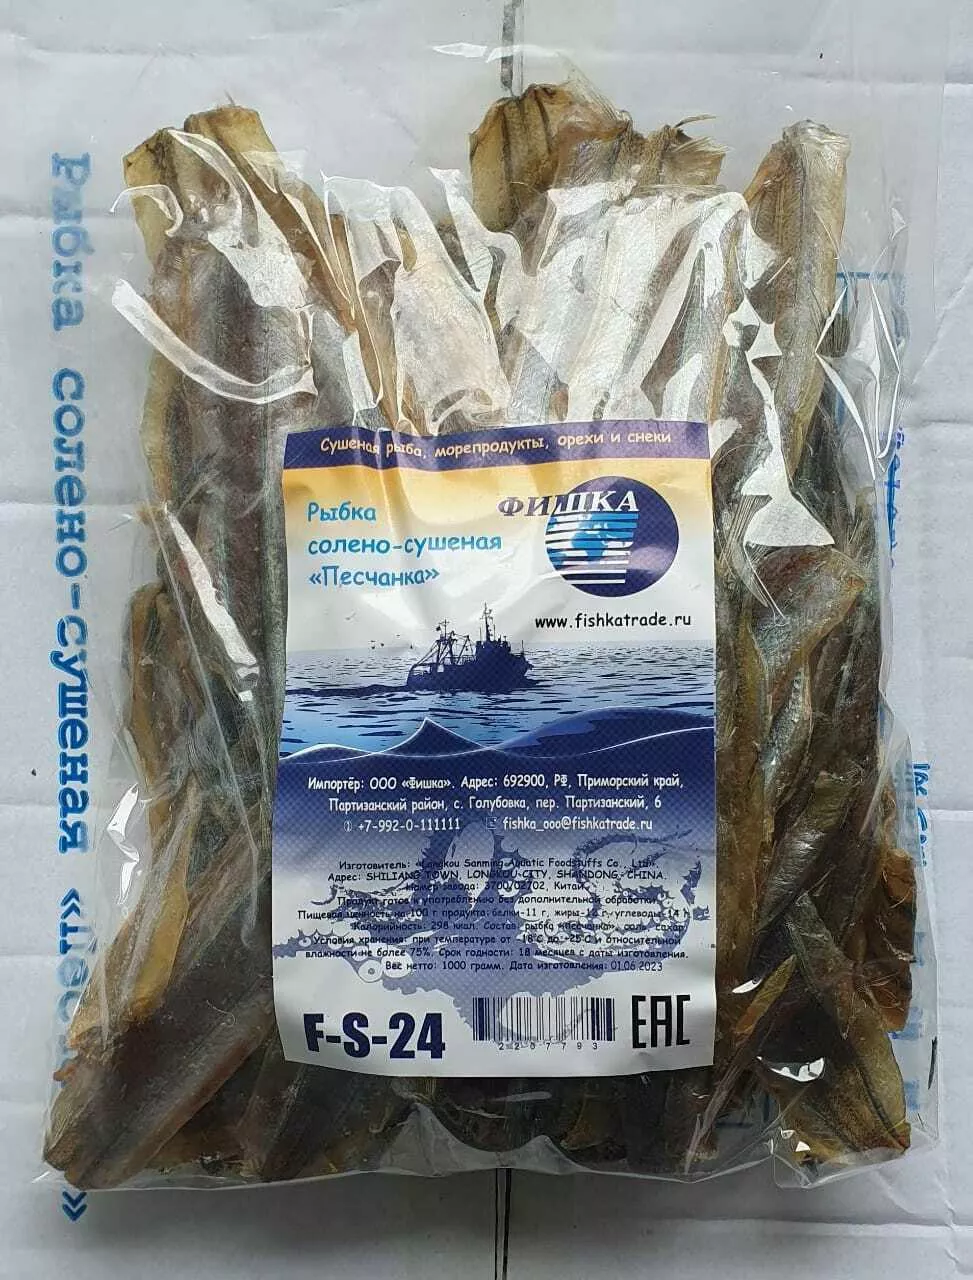 осьминог солено-сушеный (пяточки)  в Владивостоке 7